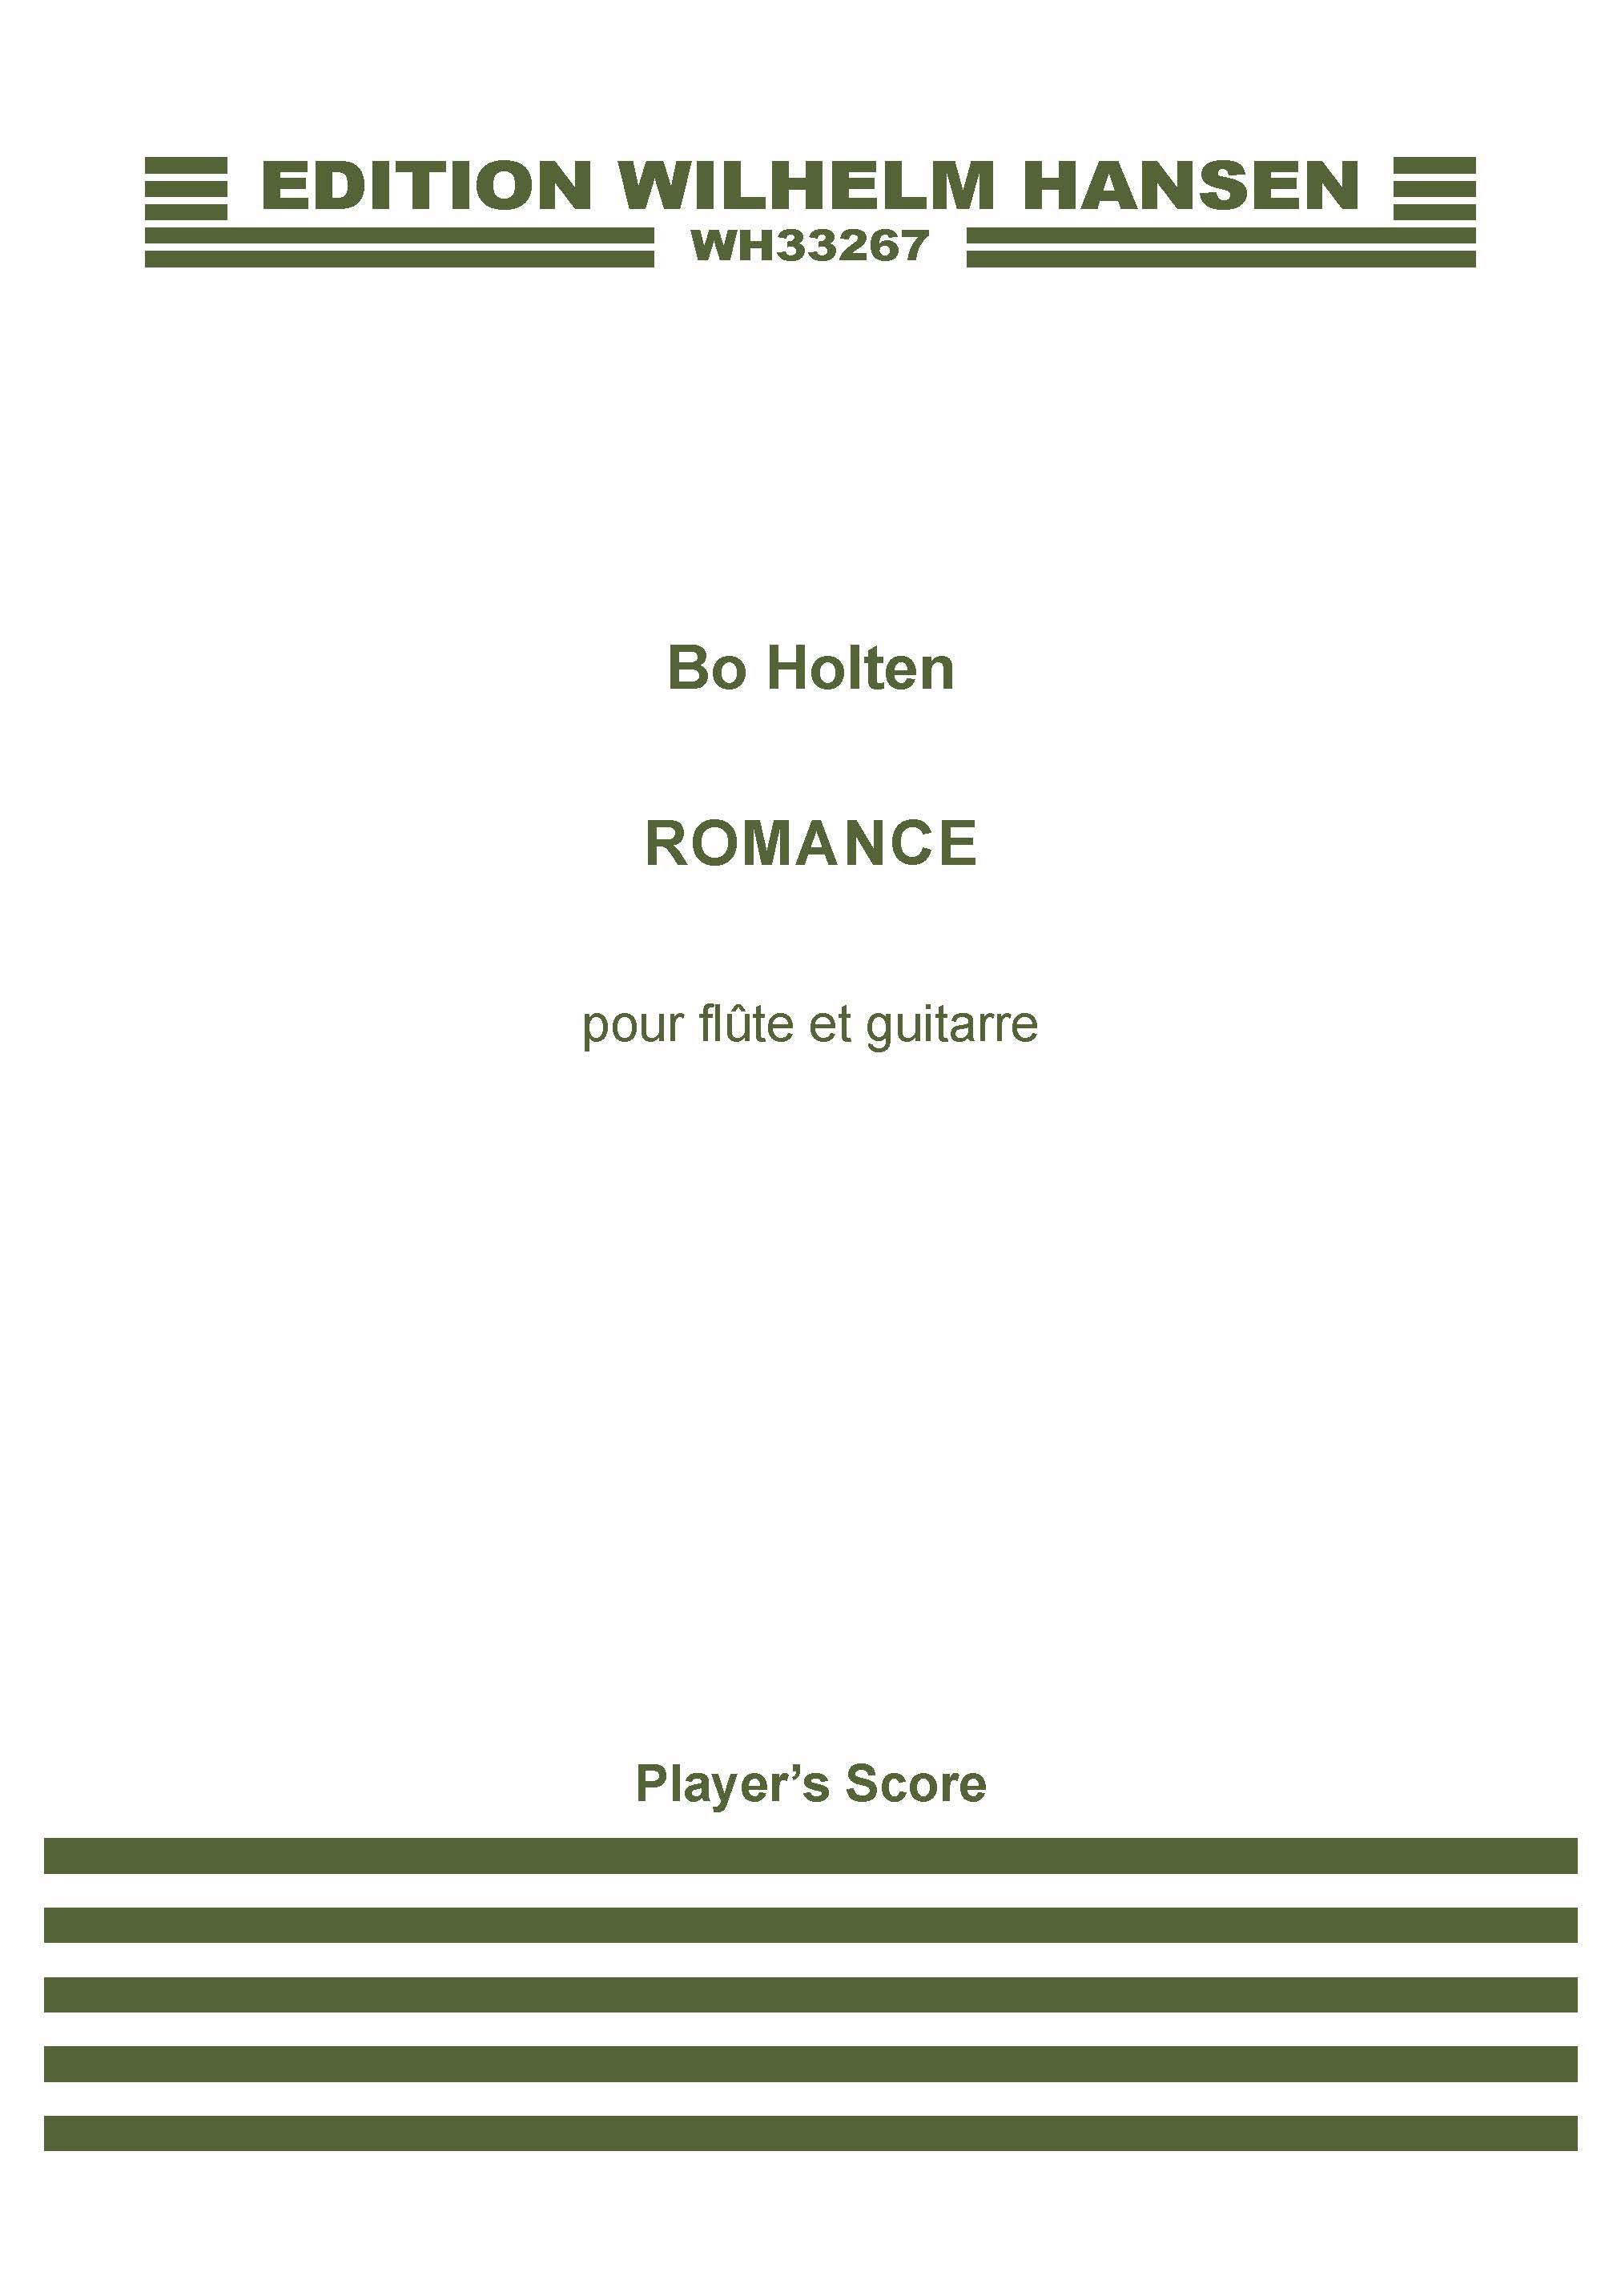 Bo Holten: Romance Pour Flute Et Guitarre: Mixed Duet: Score